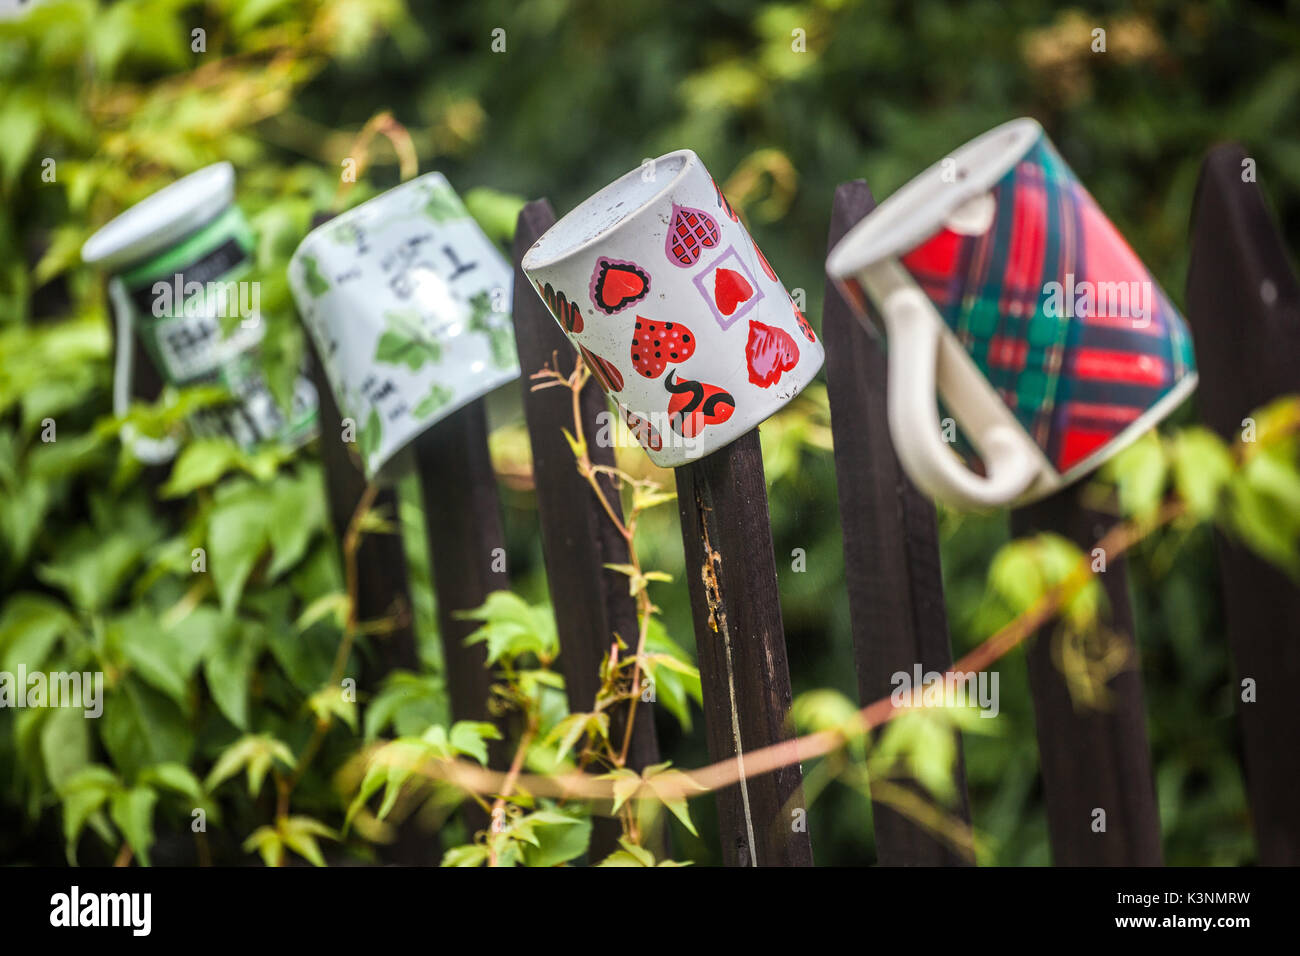 Keramikbecher, die am hölzernen Gartenzaun hängen, ein Becher mit Herzen und Stillleben Tschechien Stockfoto